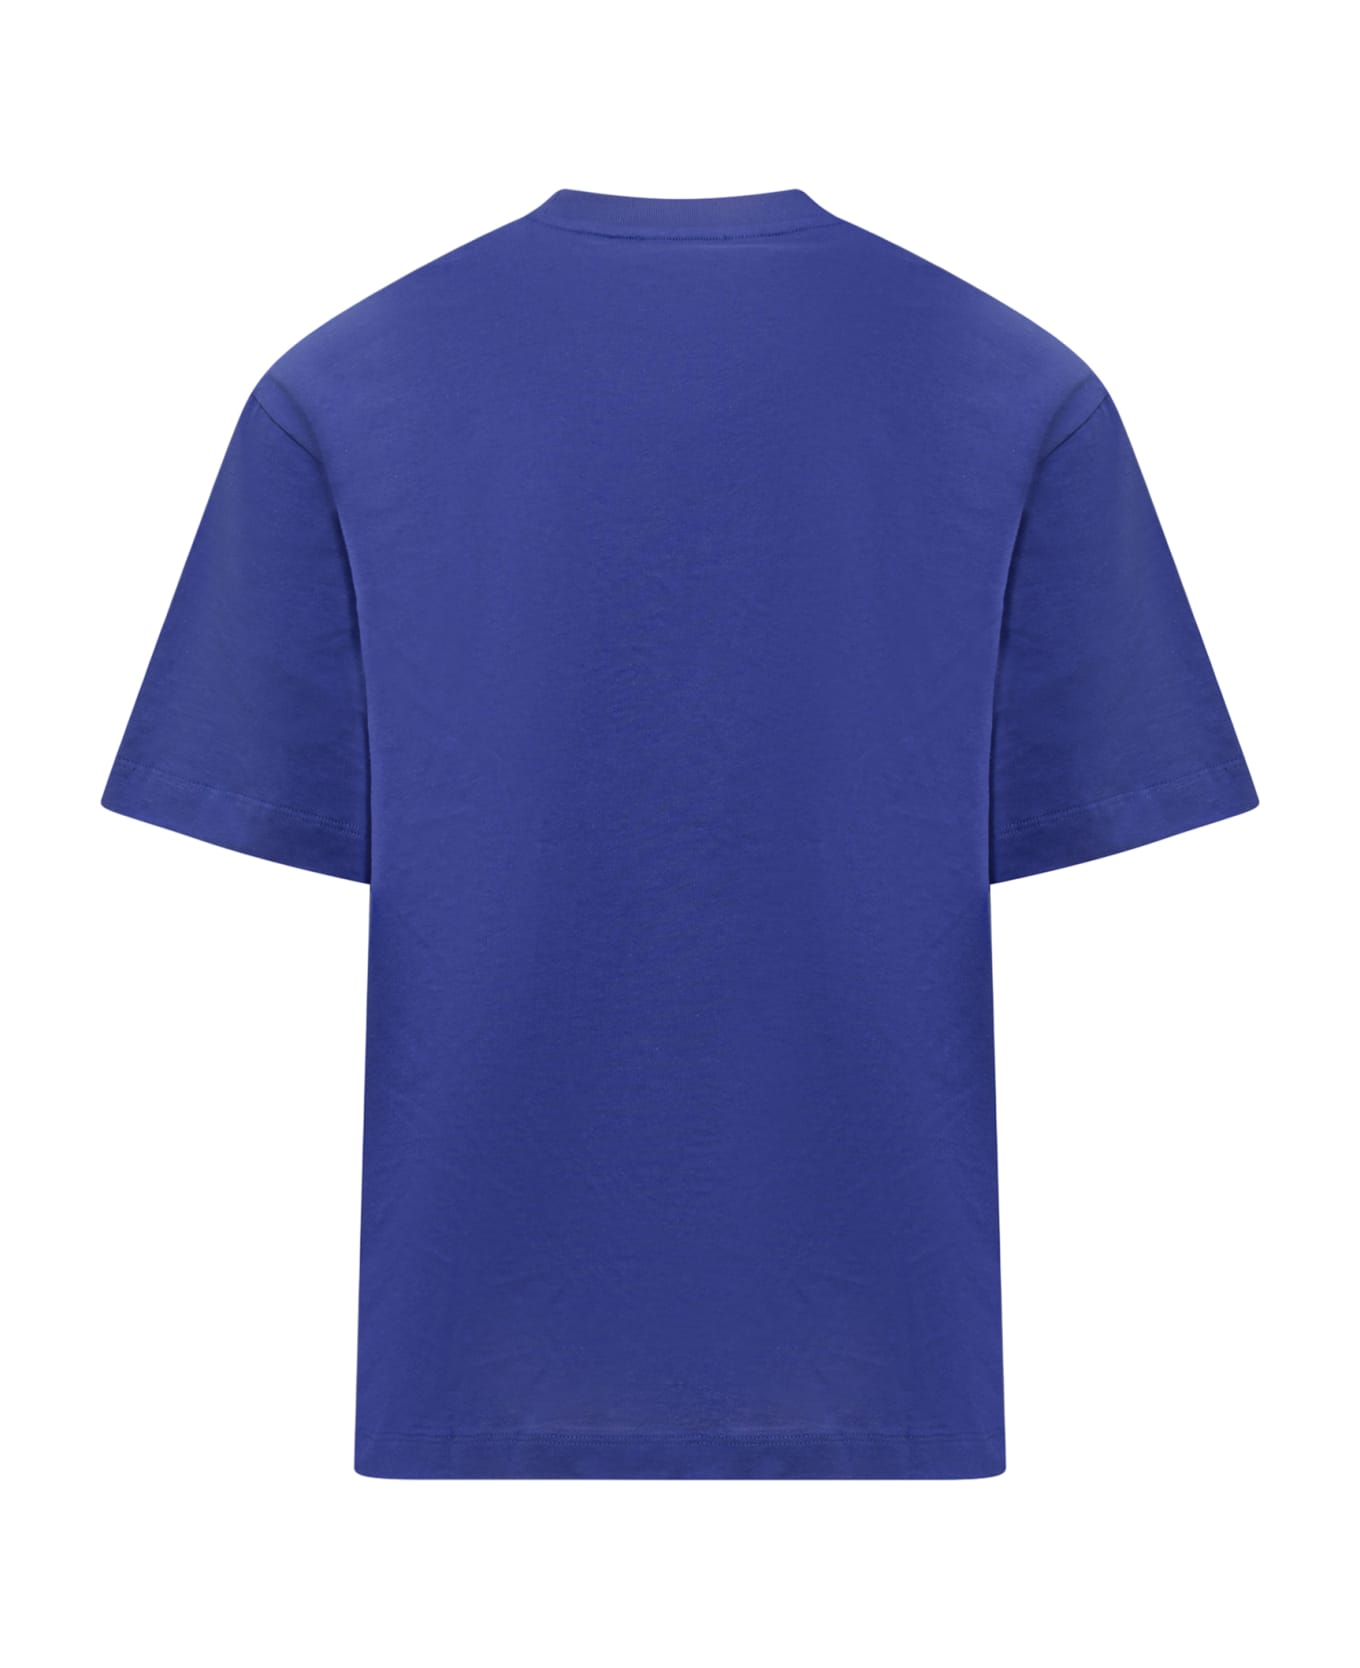 Off-White Body Stitch T-shirt - BLUE WHITE